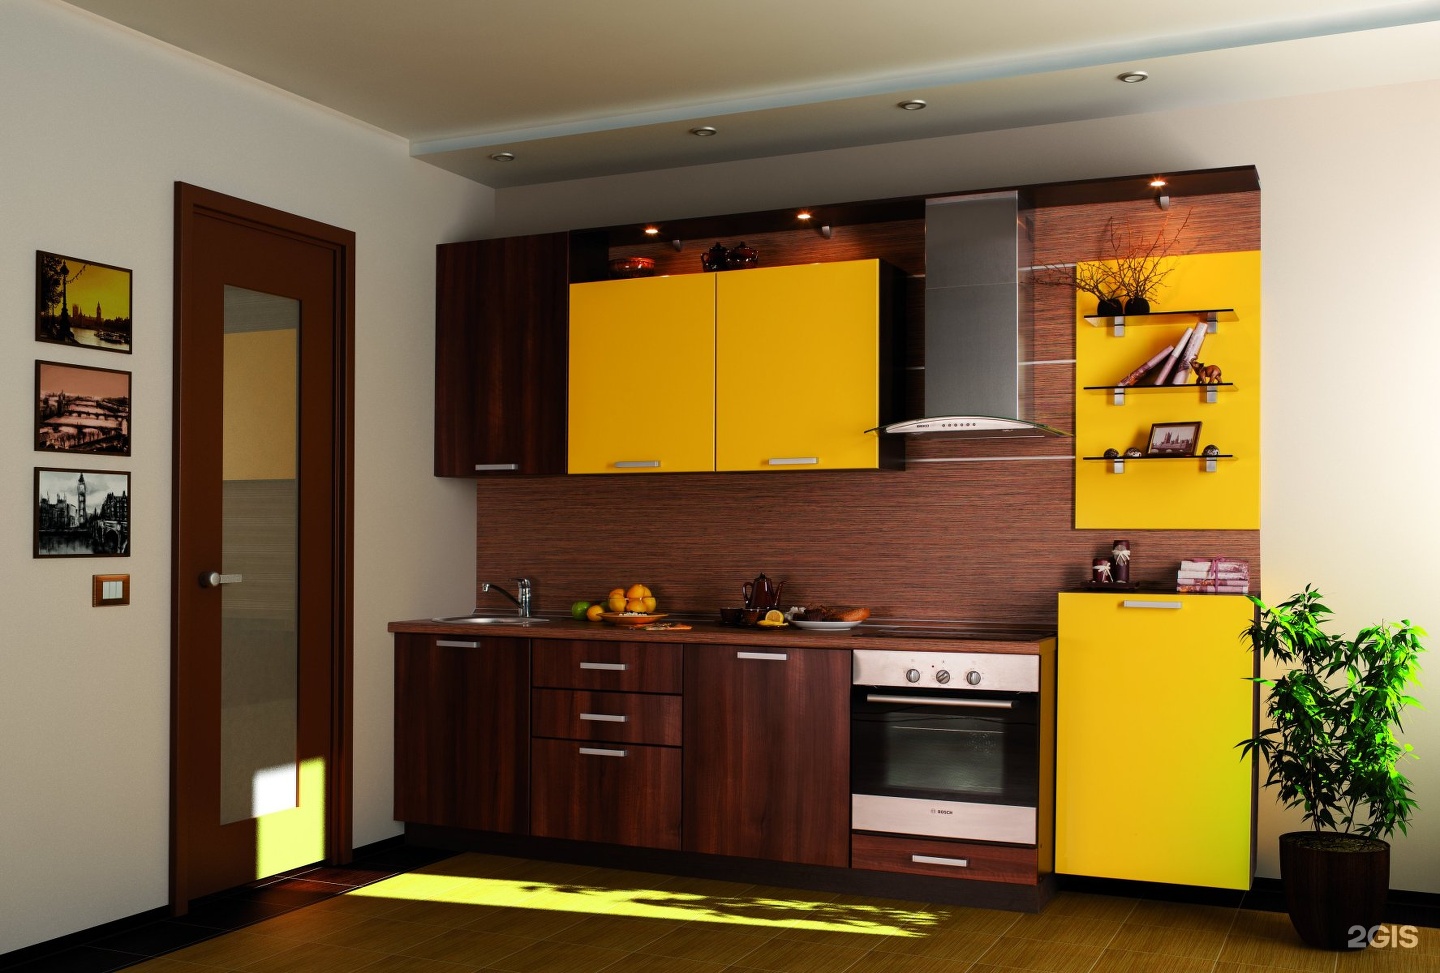 Желтые кухни